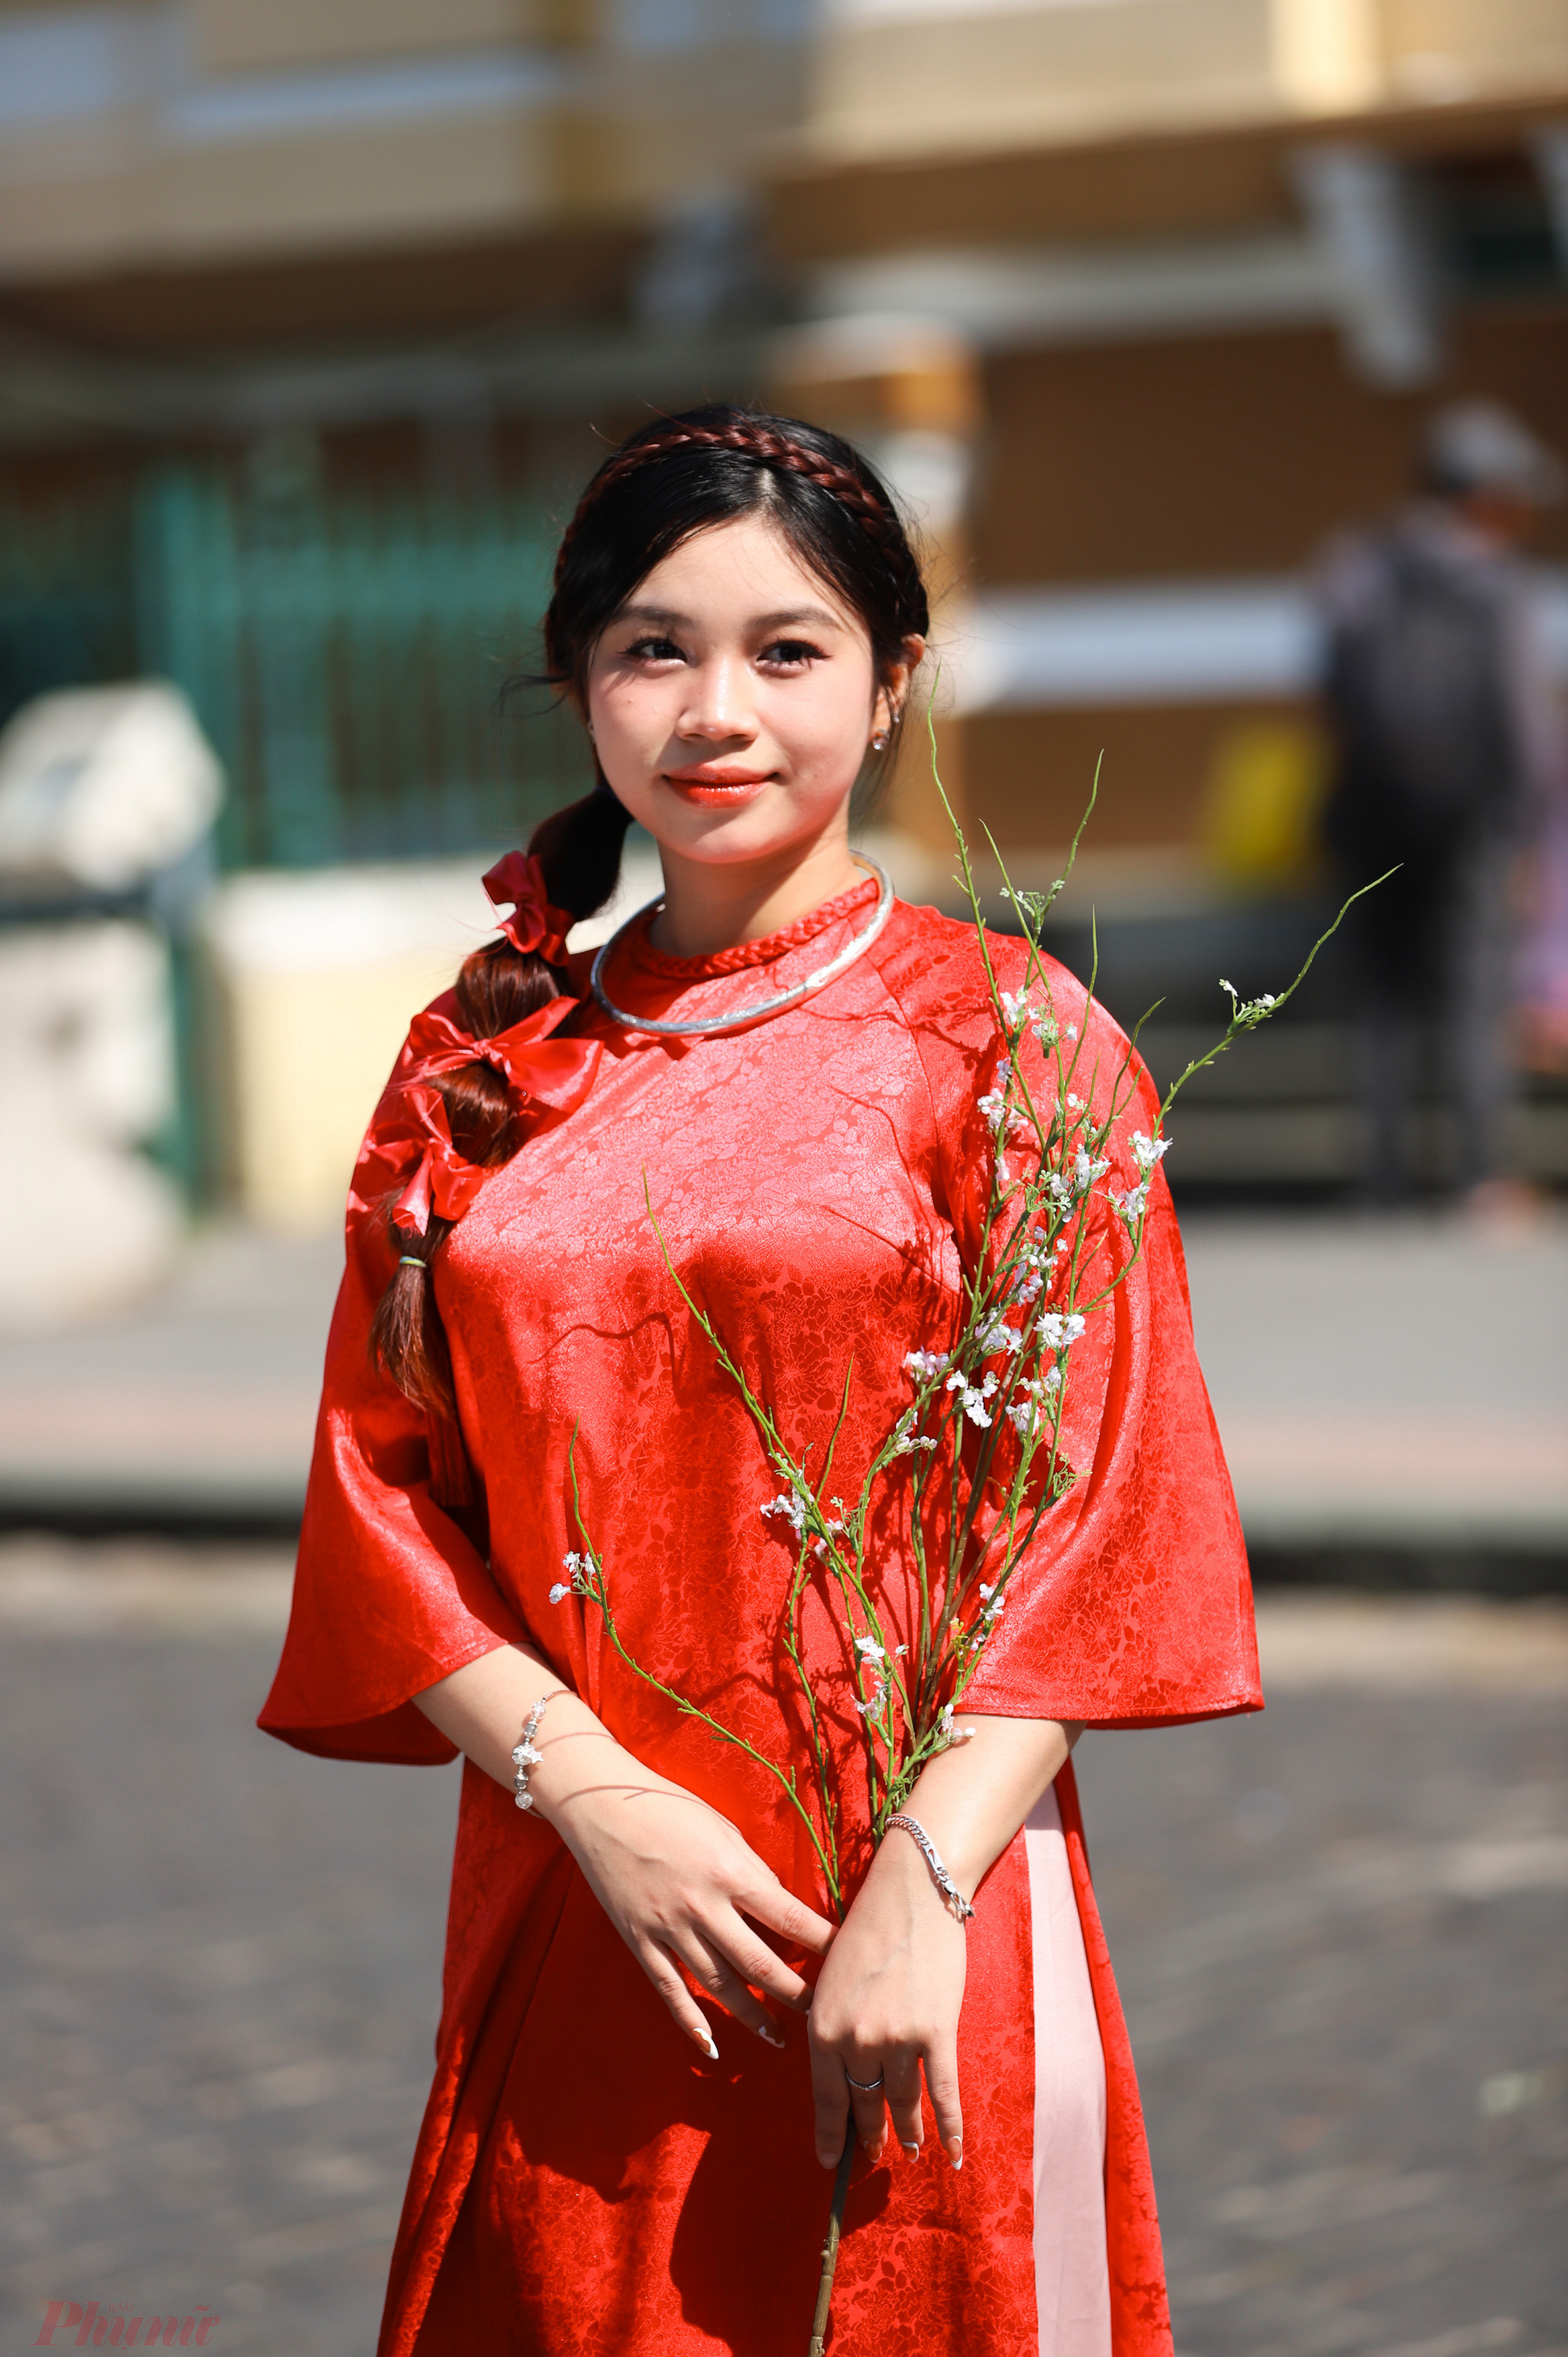 Ngoài áo dài, nhiều bạn trẻ còn mua thêm hoa, thuê các phụ kiện để có được những bức ảnh mang phong cách Tết xưa.